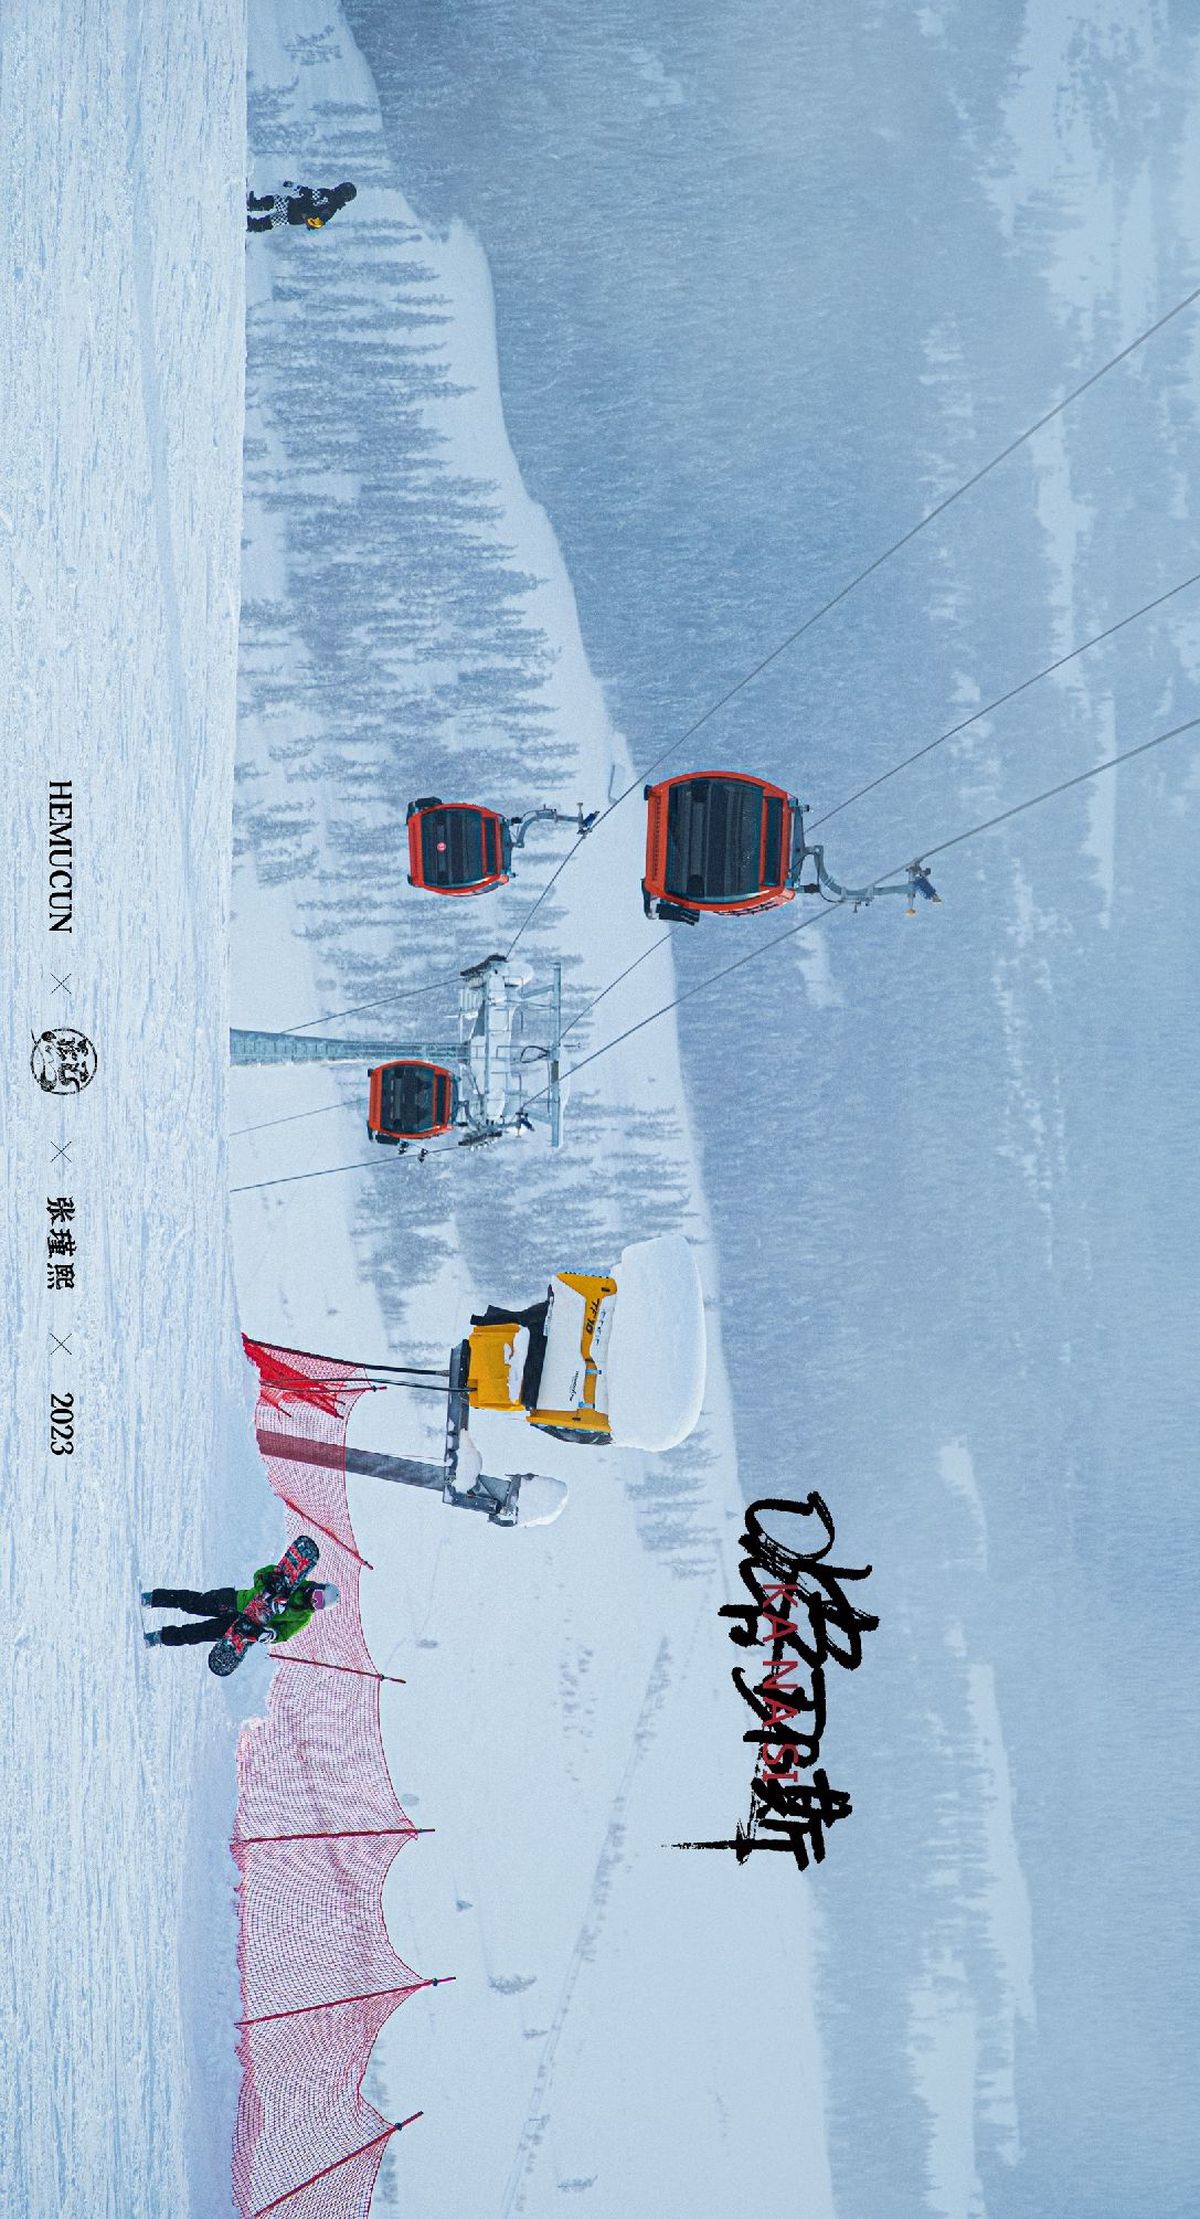 一个人在雪地中滑着雪橇 带着一把伞 还有人们乘坐滑雪索道在雪山上滑行。